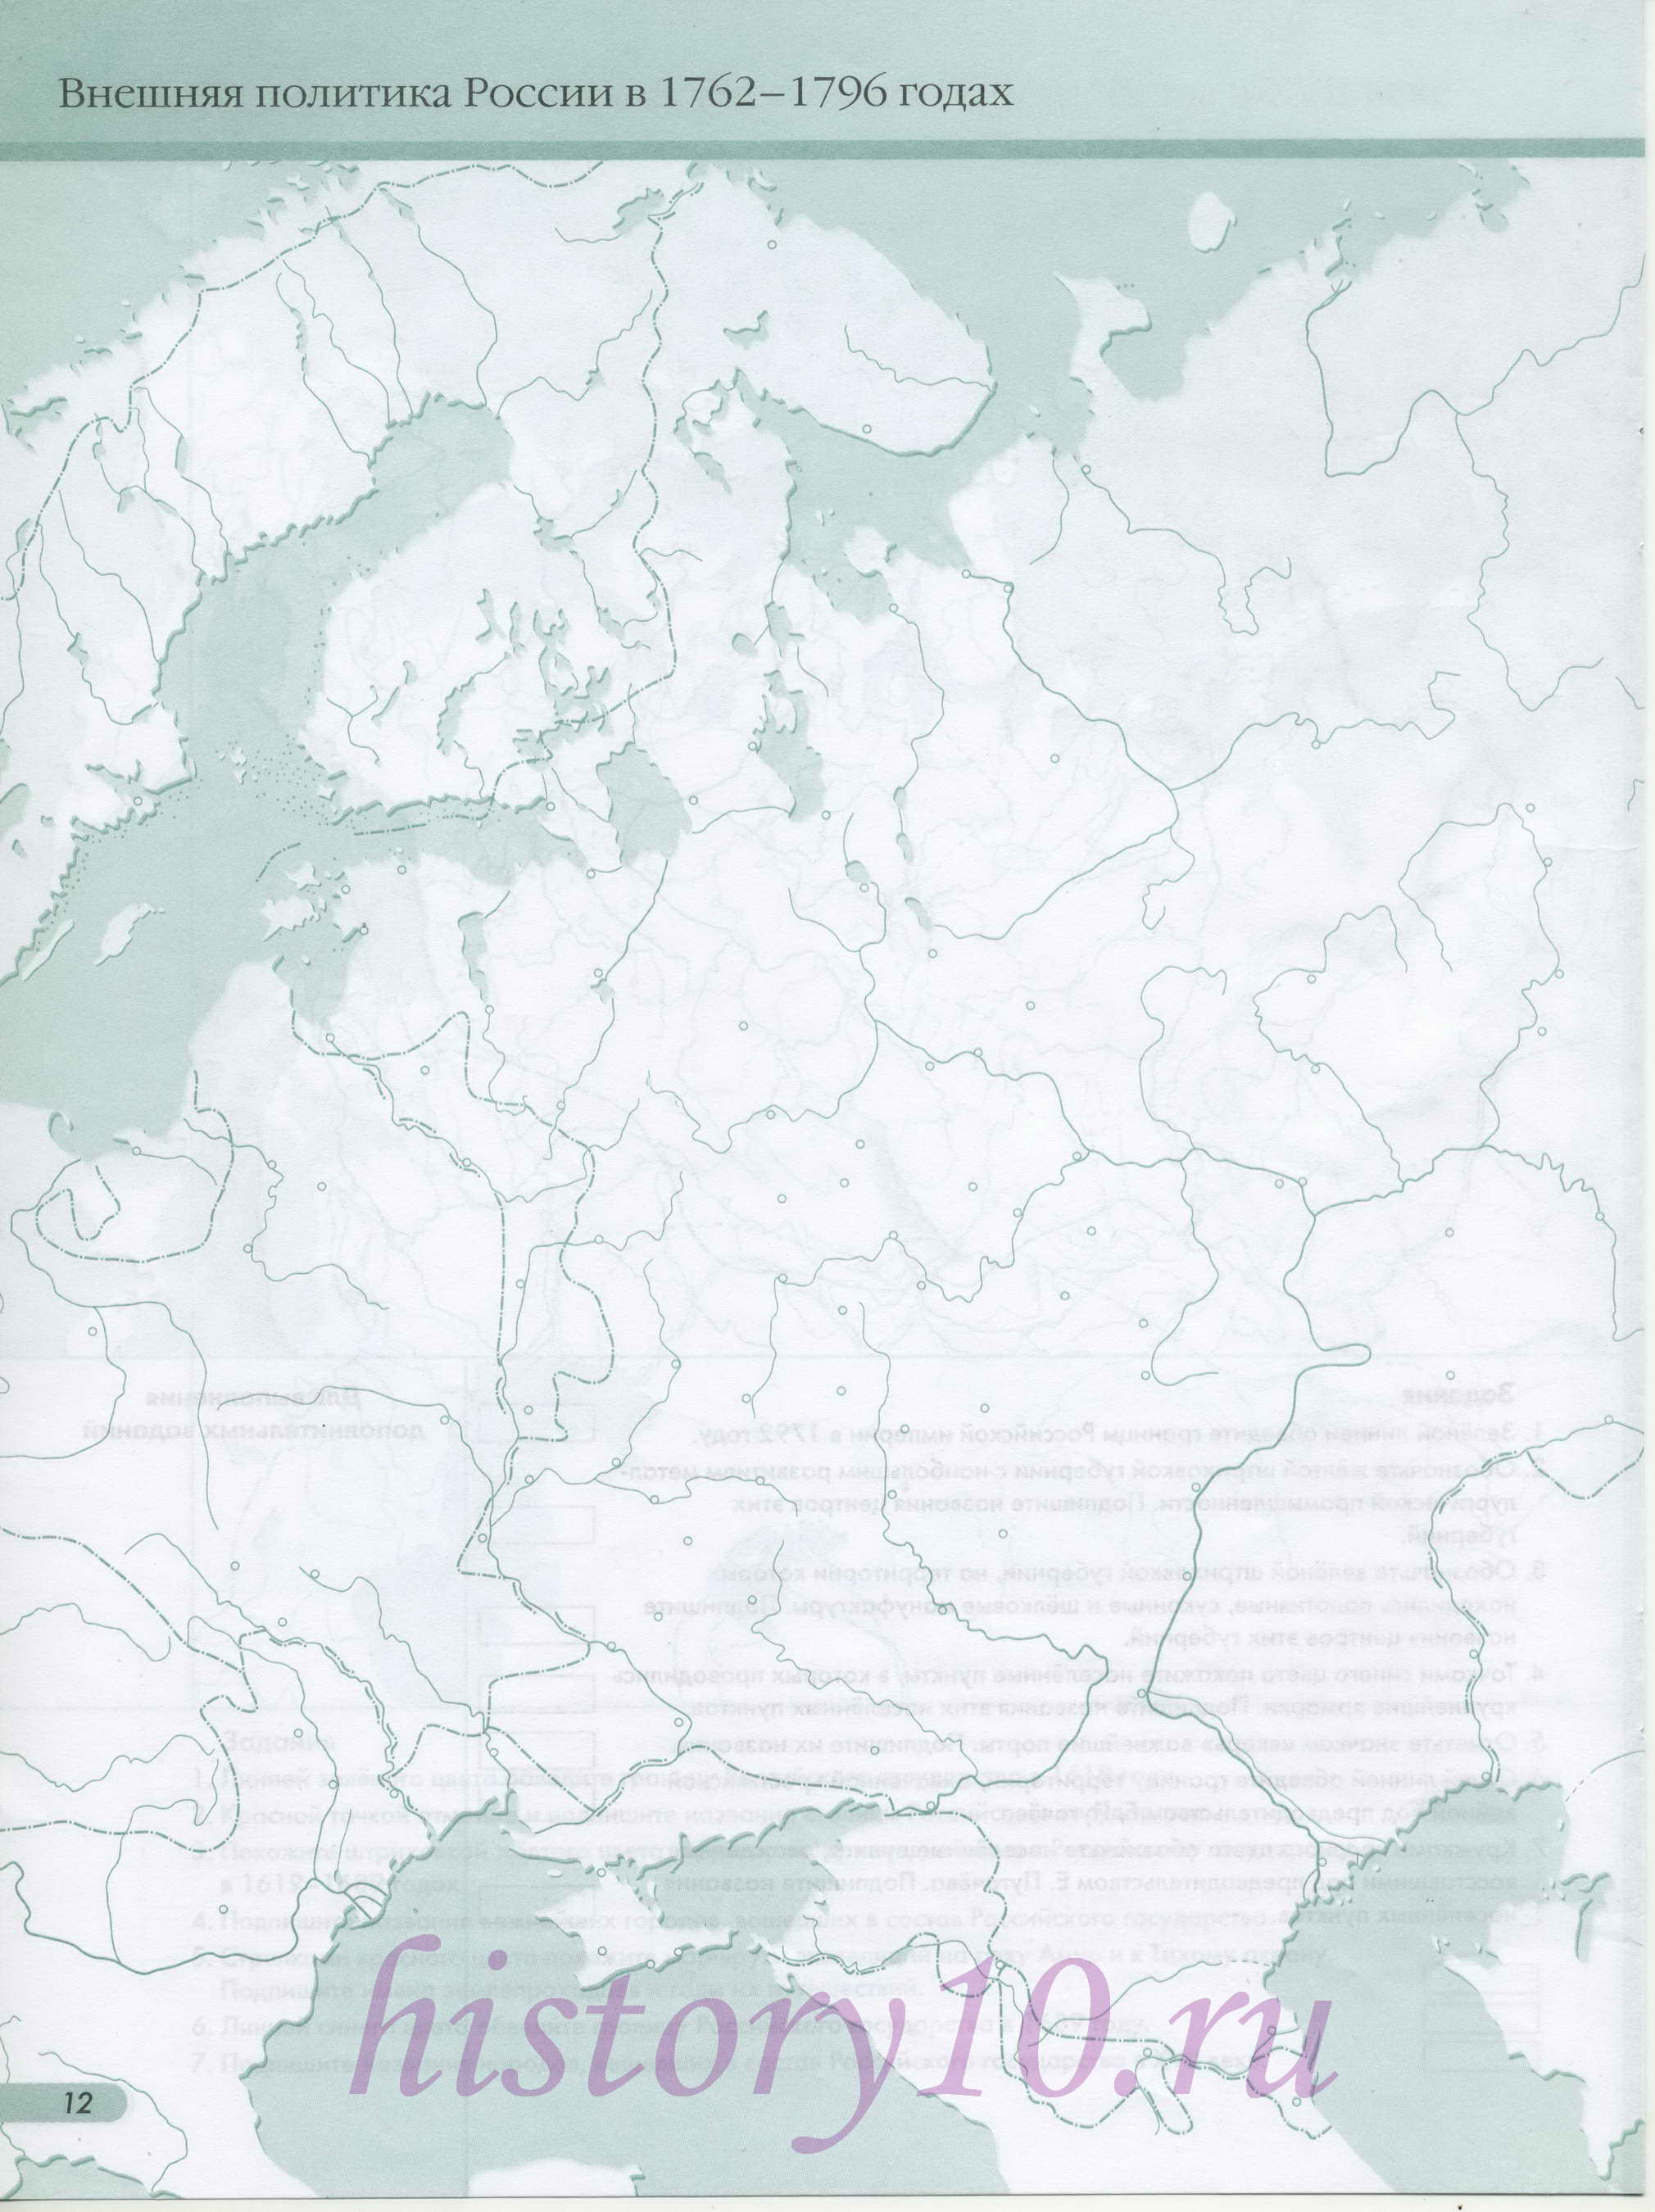 Внешняя политика России в 1762-1796 годах - контурная карта. Атлас по истории России для 7 класса - контурная карта - внешняя политика России, A0 - 